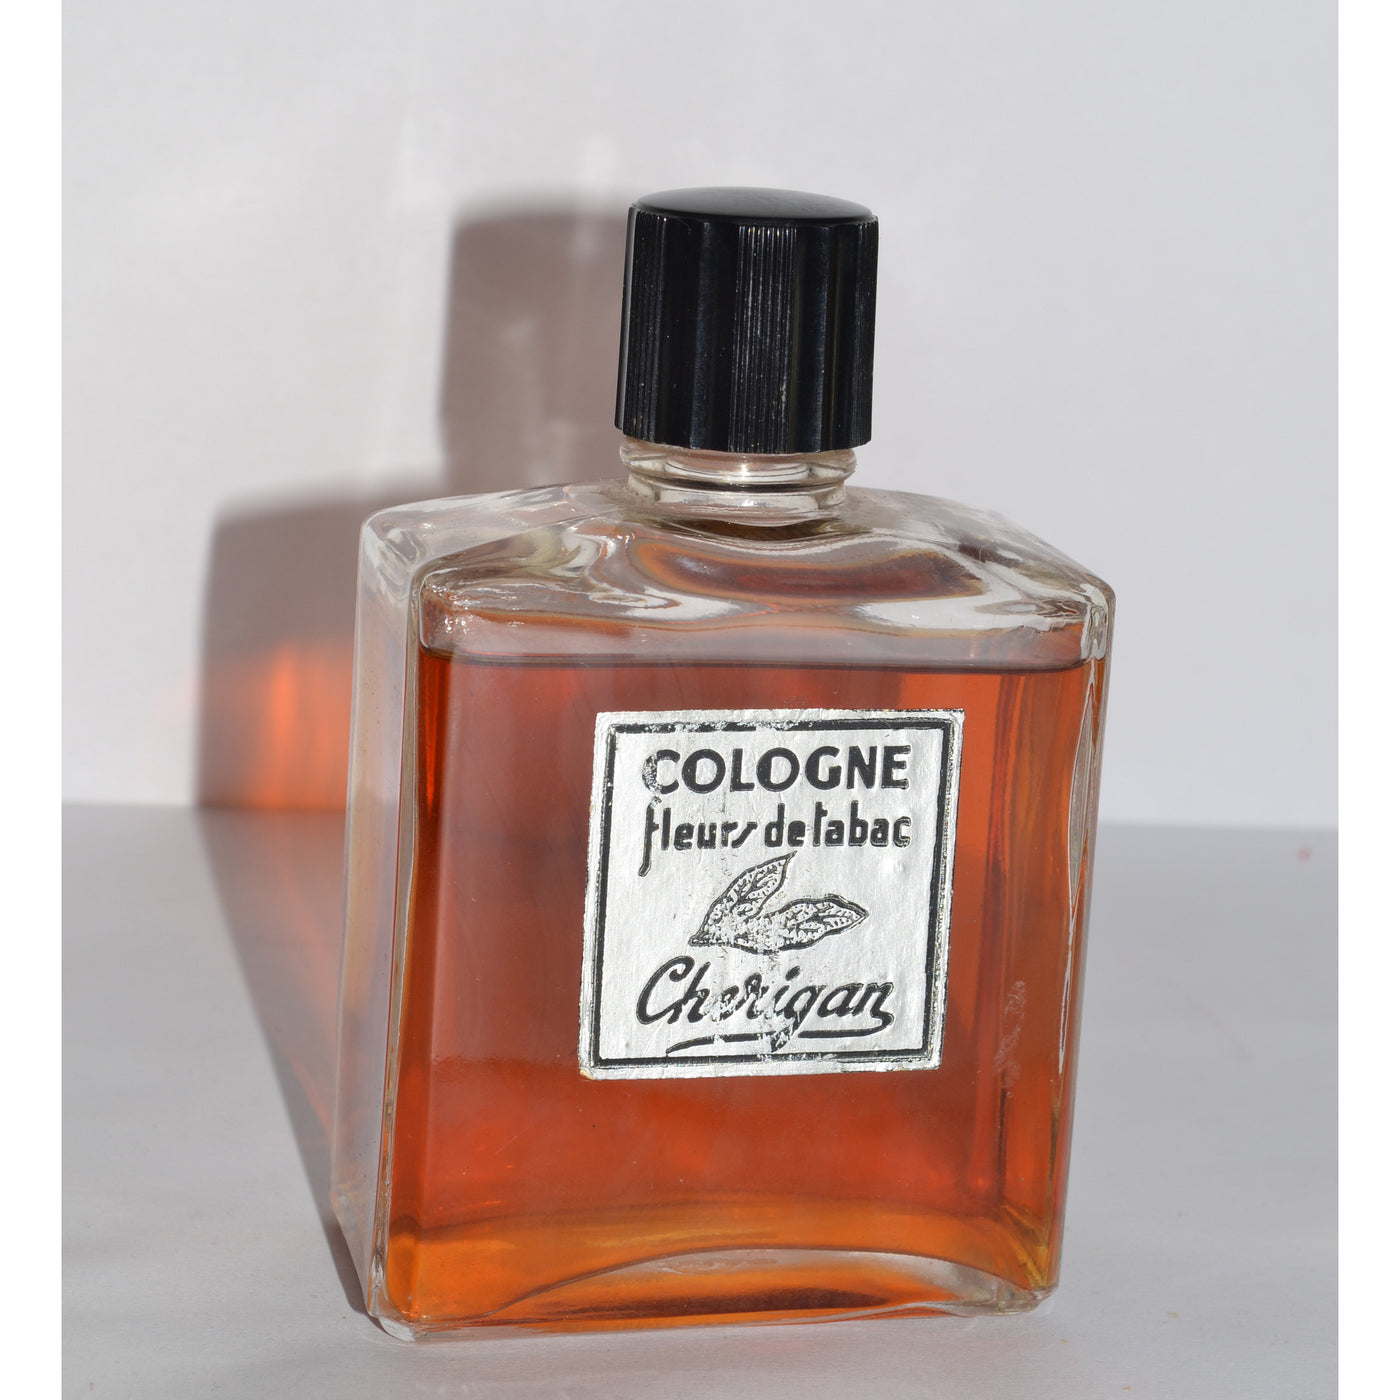 Vintage Cherigan Fleurs de Tabac Cologne